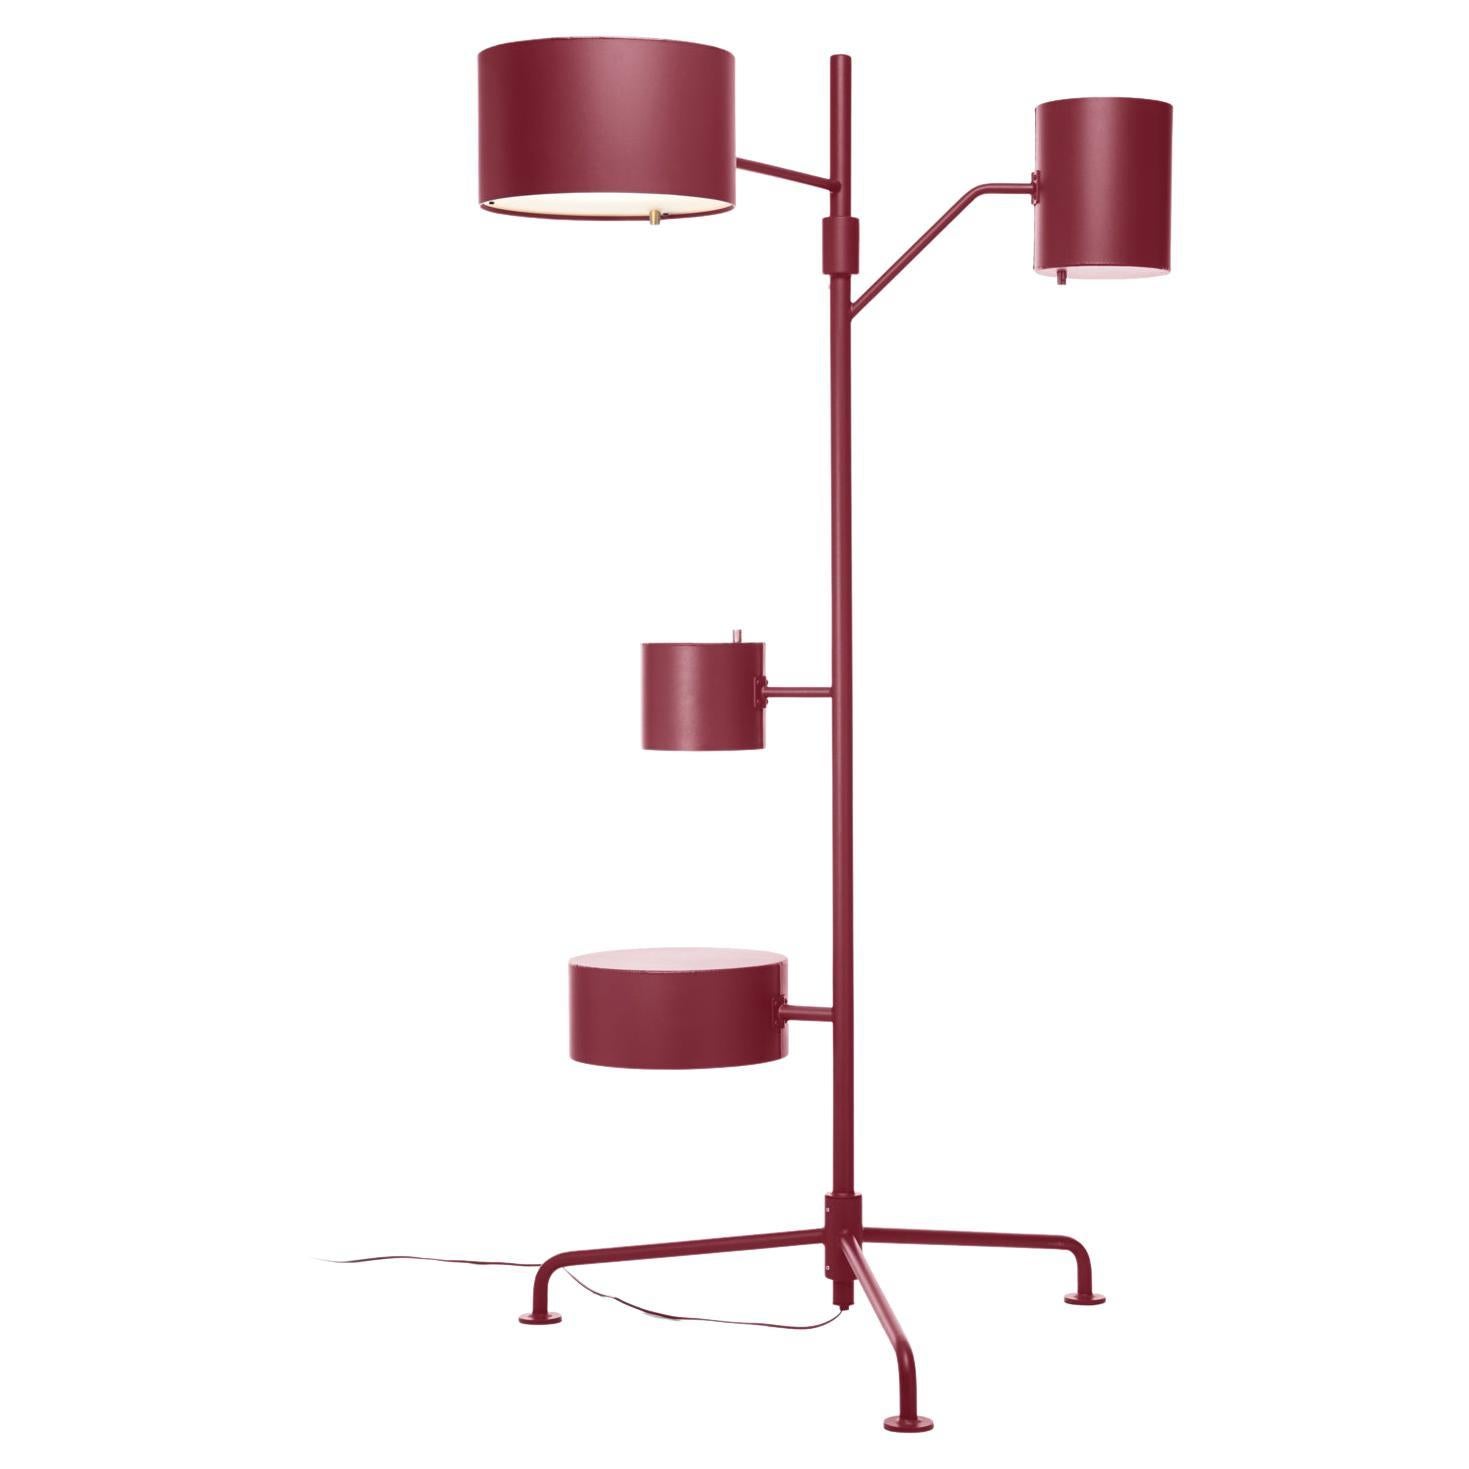 Lampadaire LED Statistocrat de Moooi en aluminium revêtu de poudre rouge rubis mat